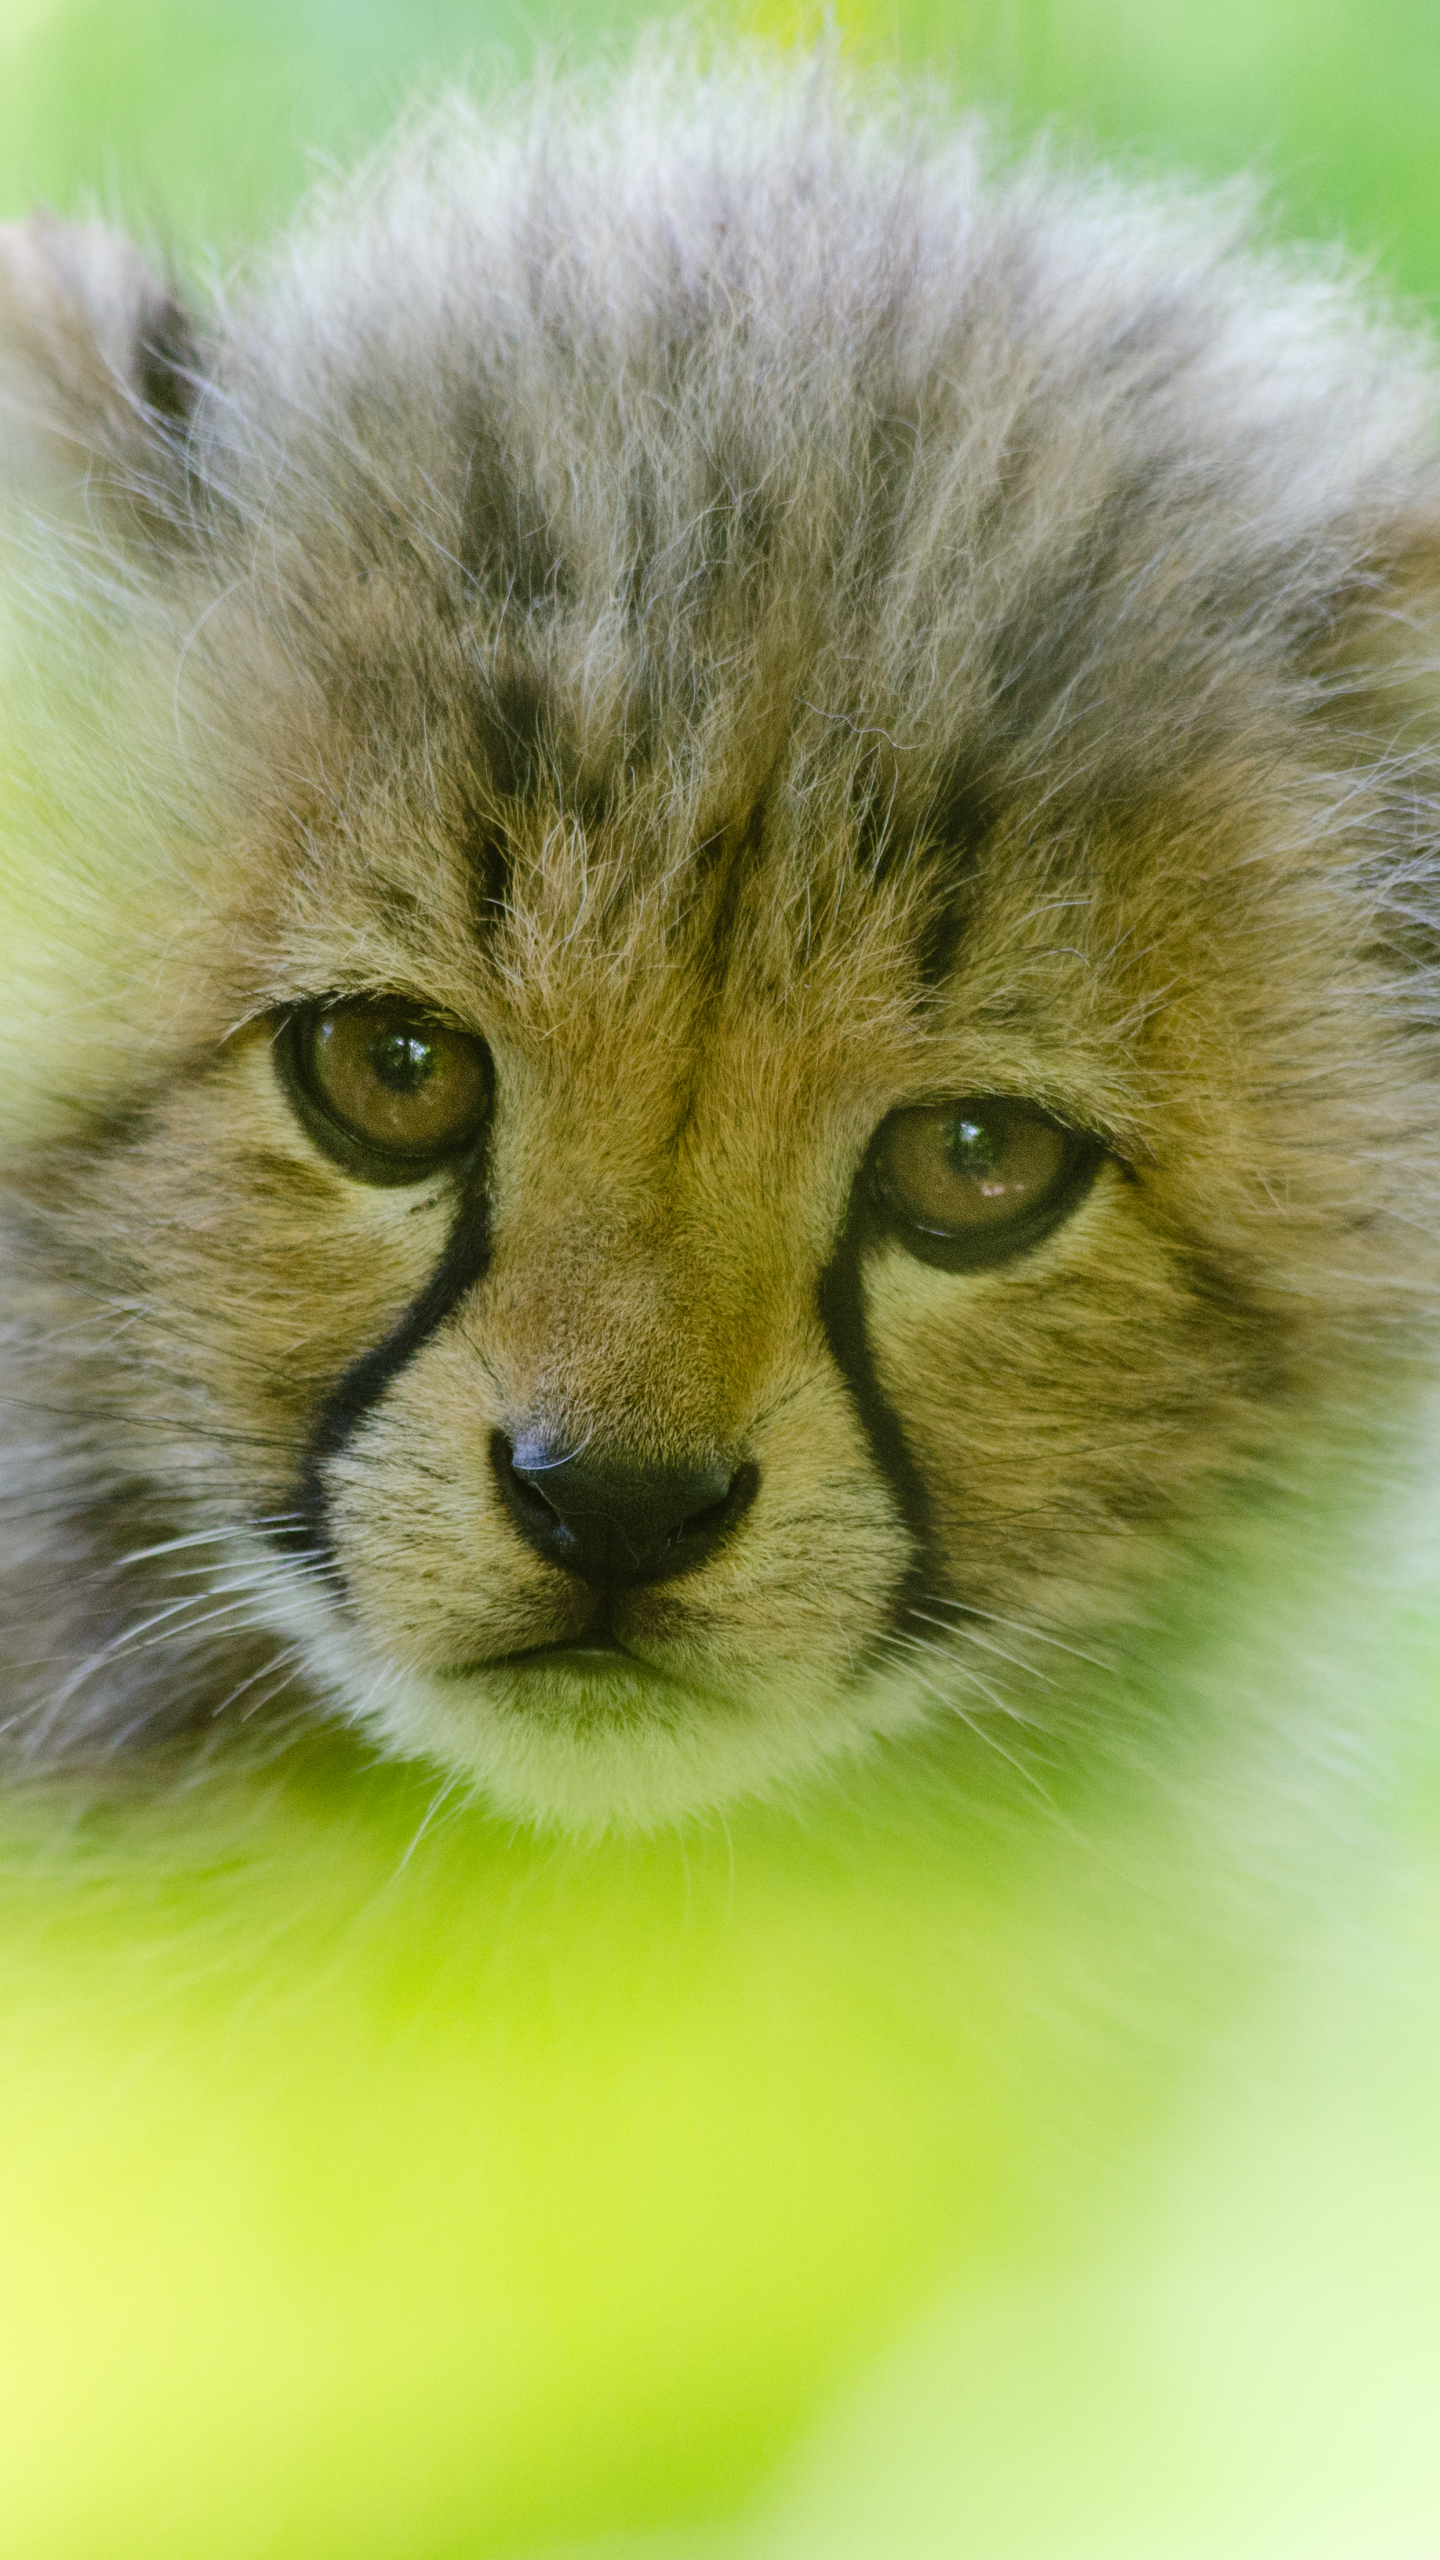 Face of a Cheetah Cub by Mathias Appel